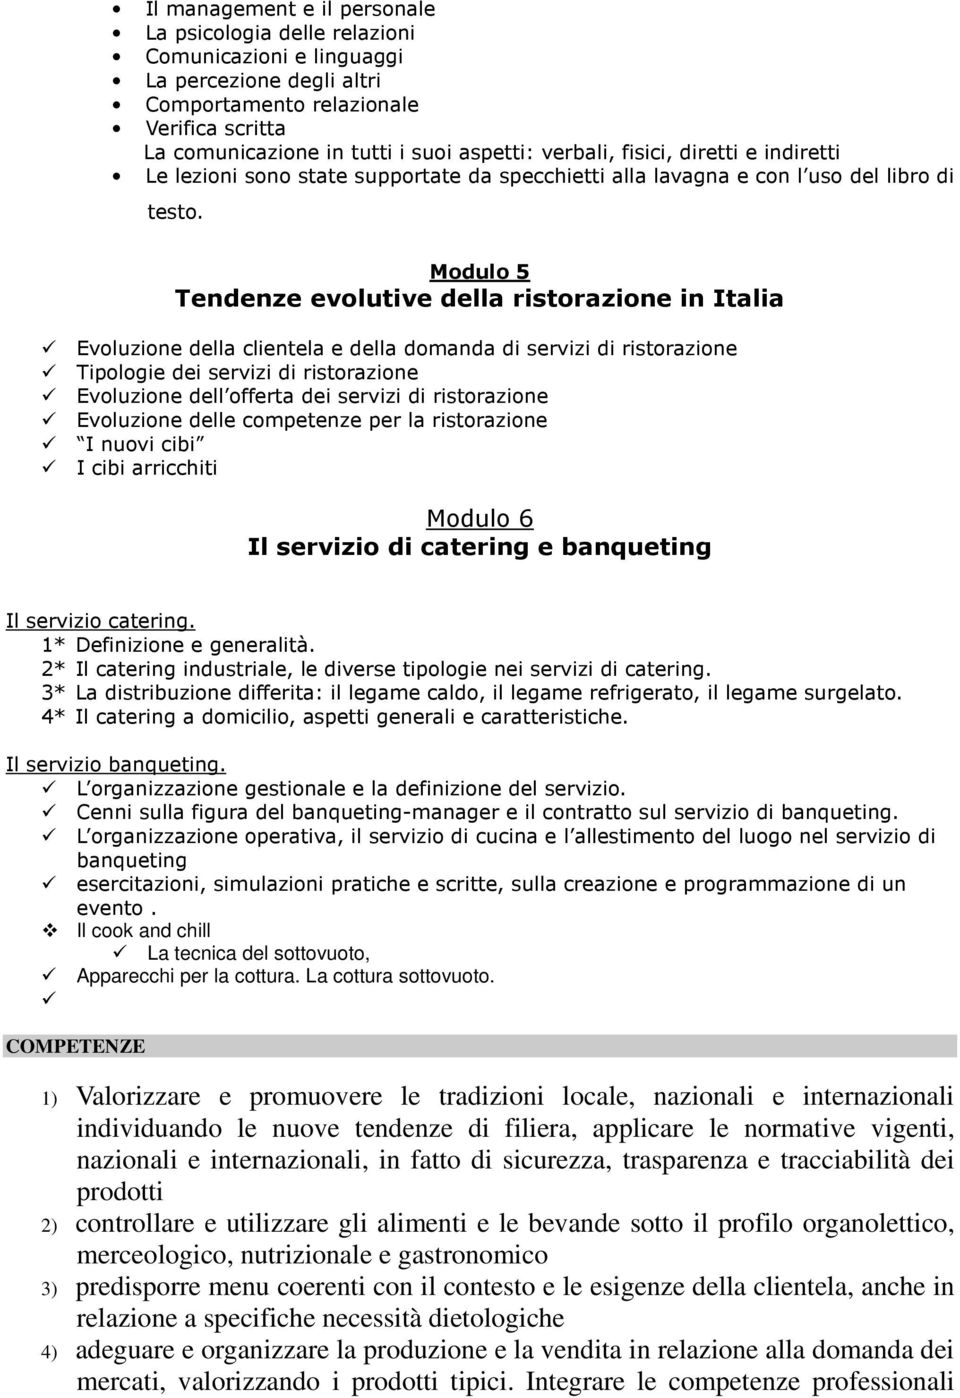 Modulo 5 Tendenze evolutive della ristorazione in Italia Evoluzione della clientela e della domanda di servizi di ristorazione Tipologie dei servizi di ristorazione Evoluzione dell offerta dei